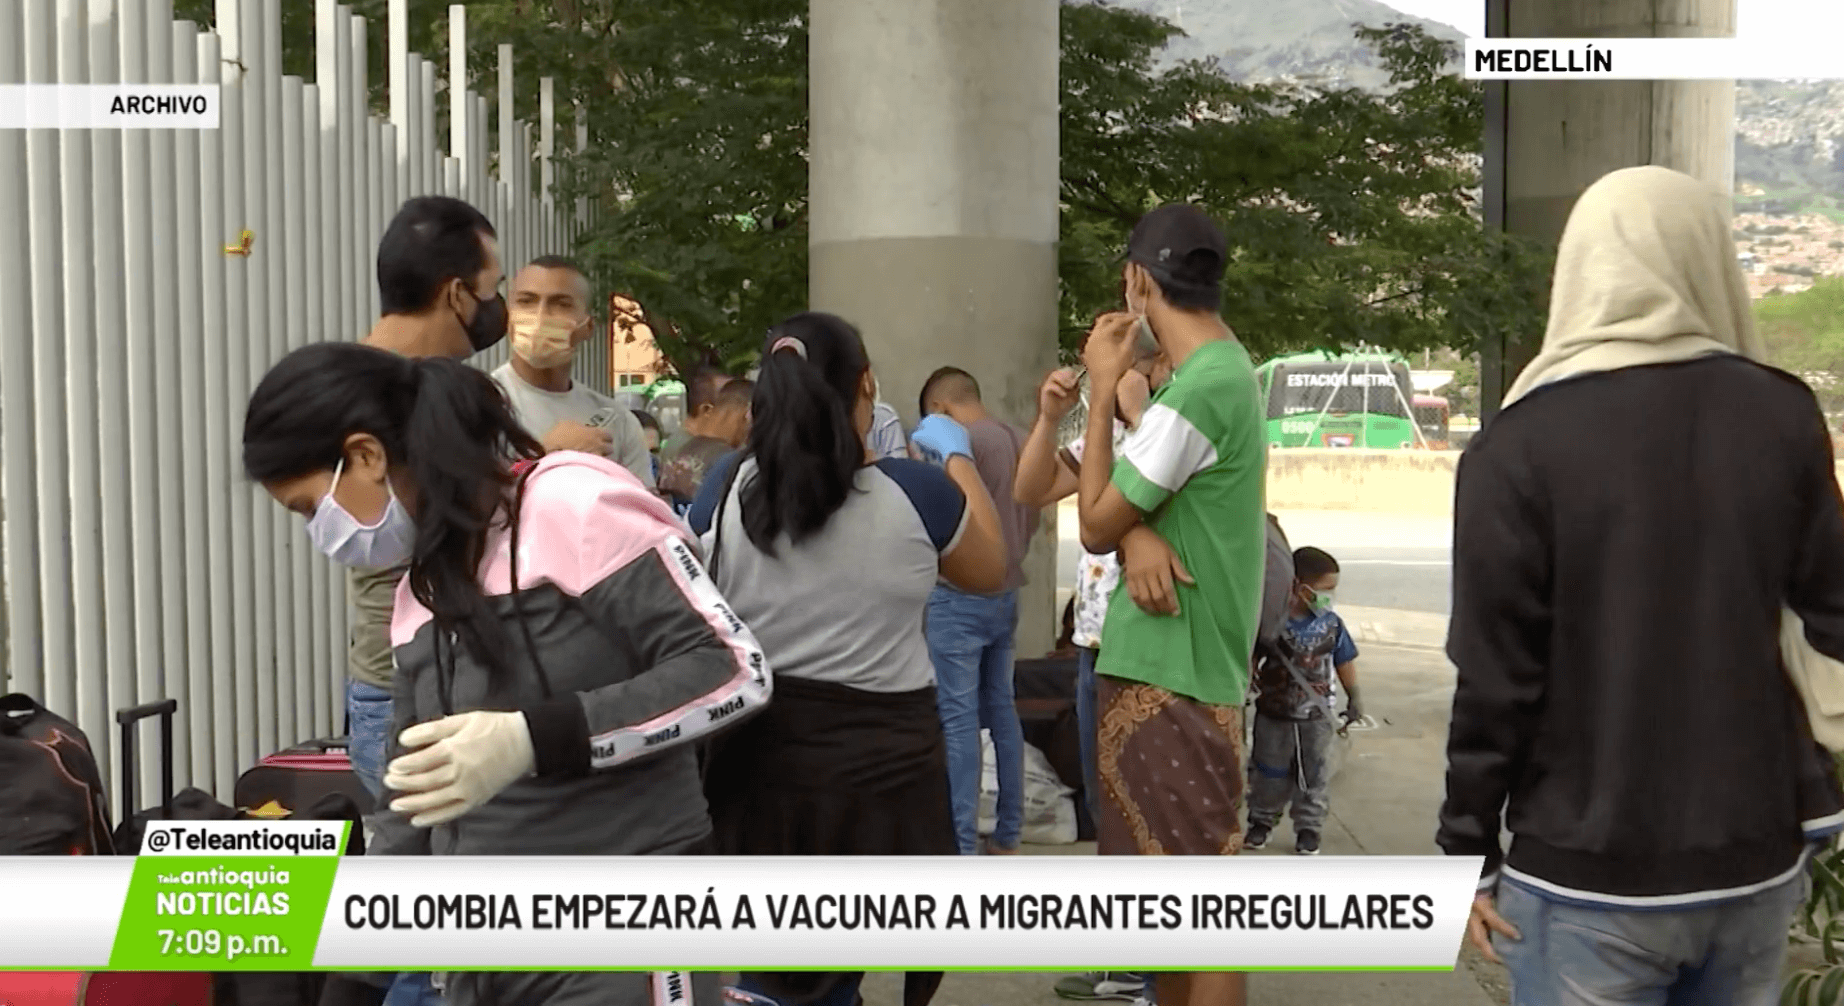 Colombia empezará a vacunar a migrantes irregulares